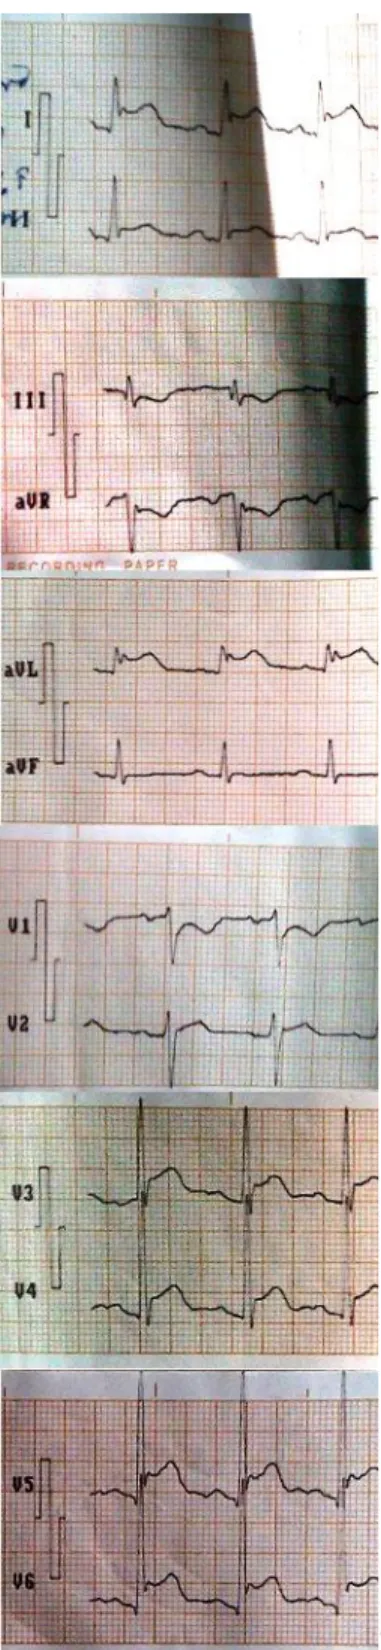 Figure 2. A 12-lead electrocardiogram 